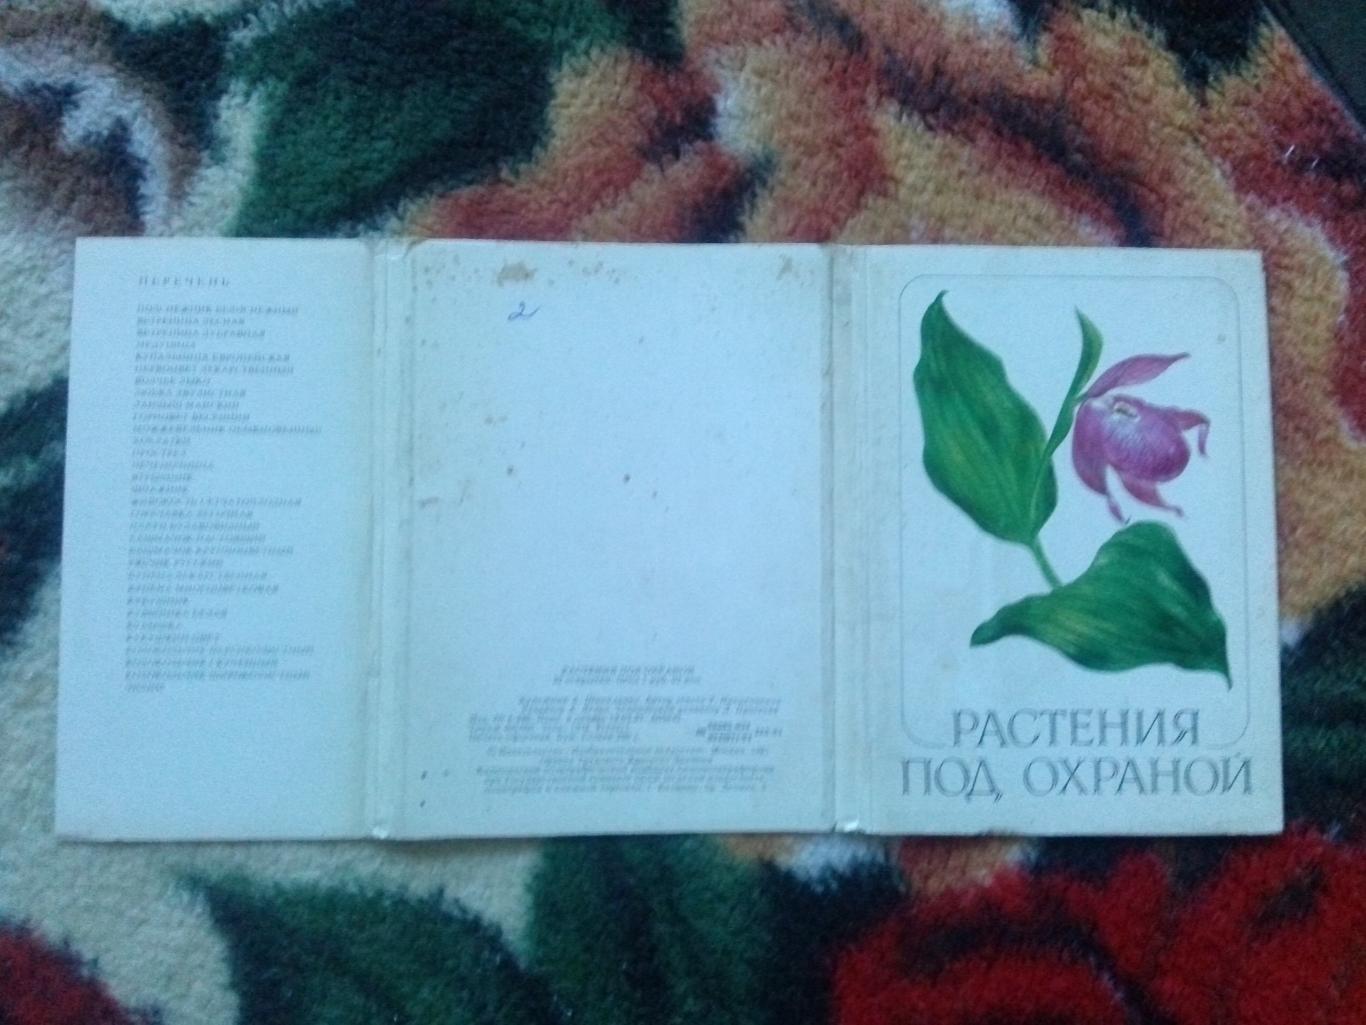 Растения под охраной 1981 г. полный набор - 32 открытки (чистые ) Флора 1